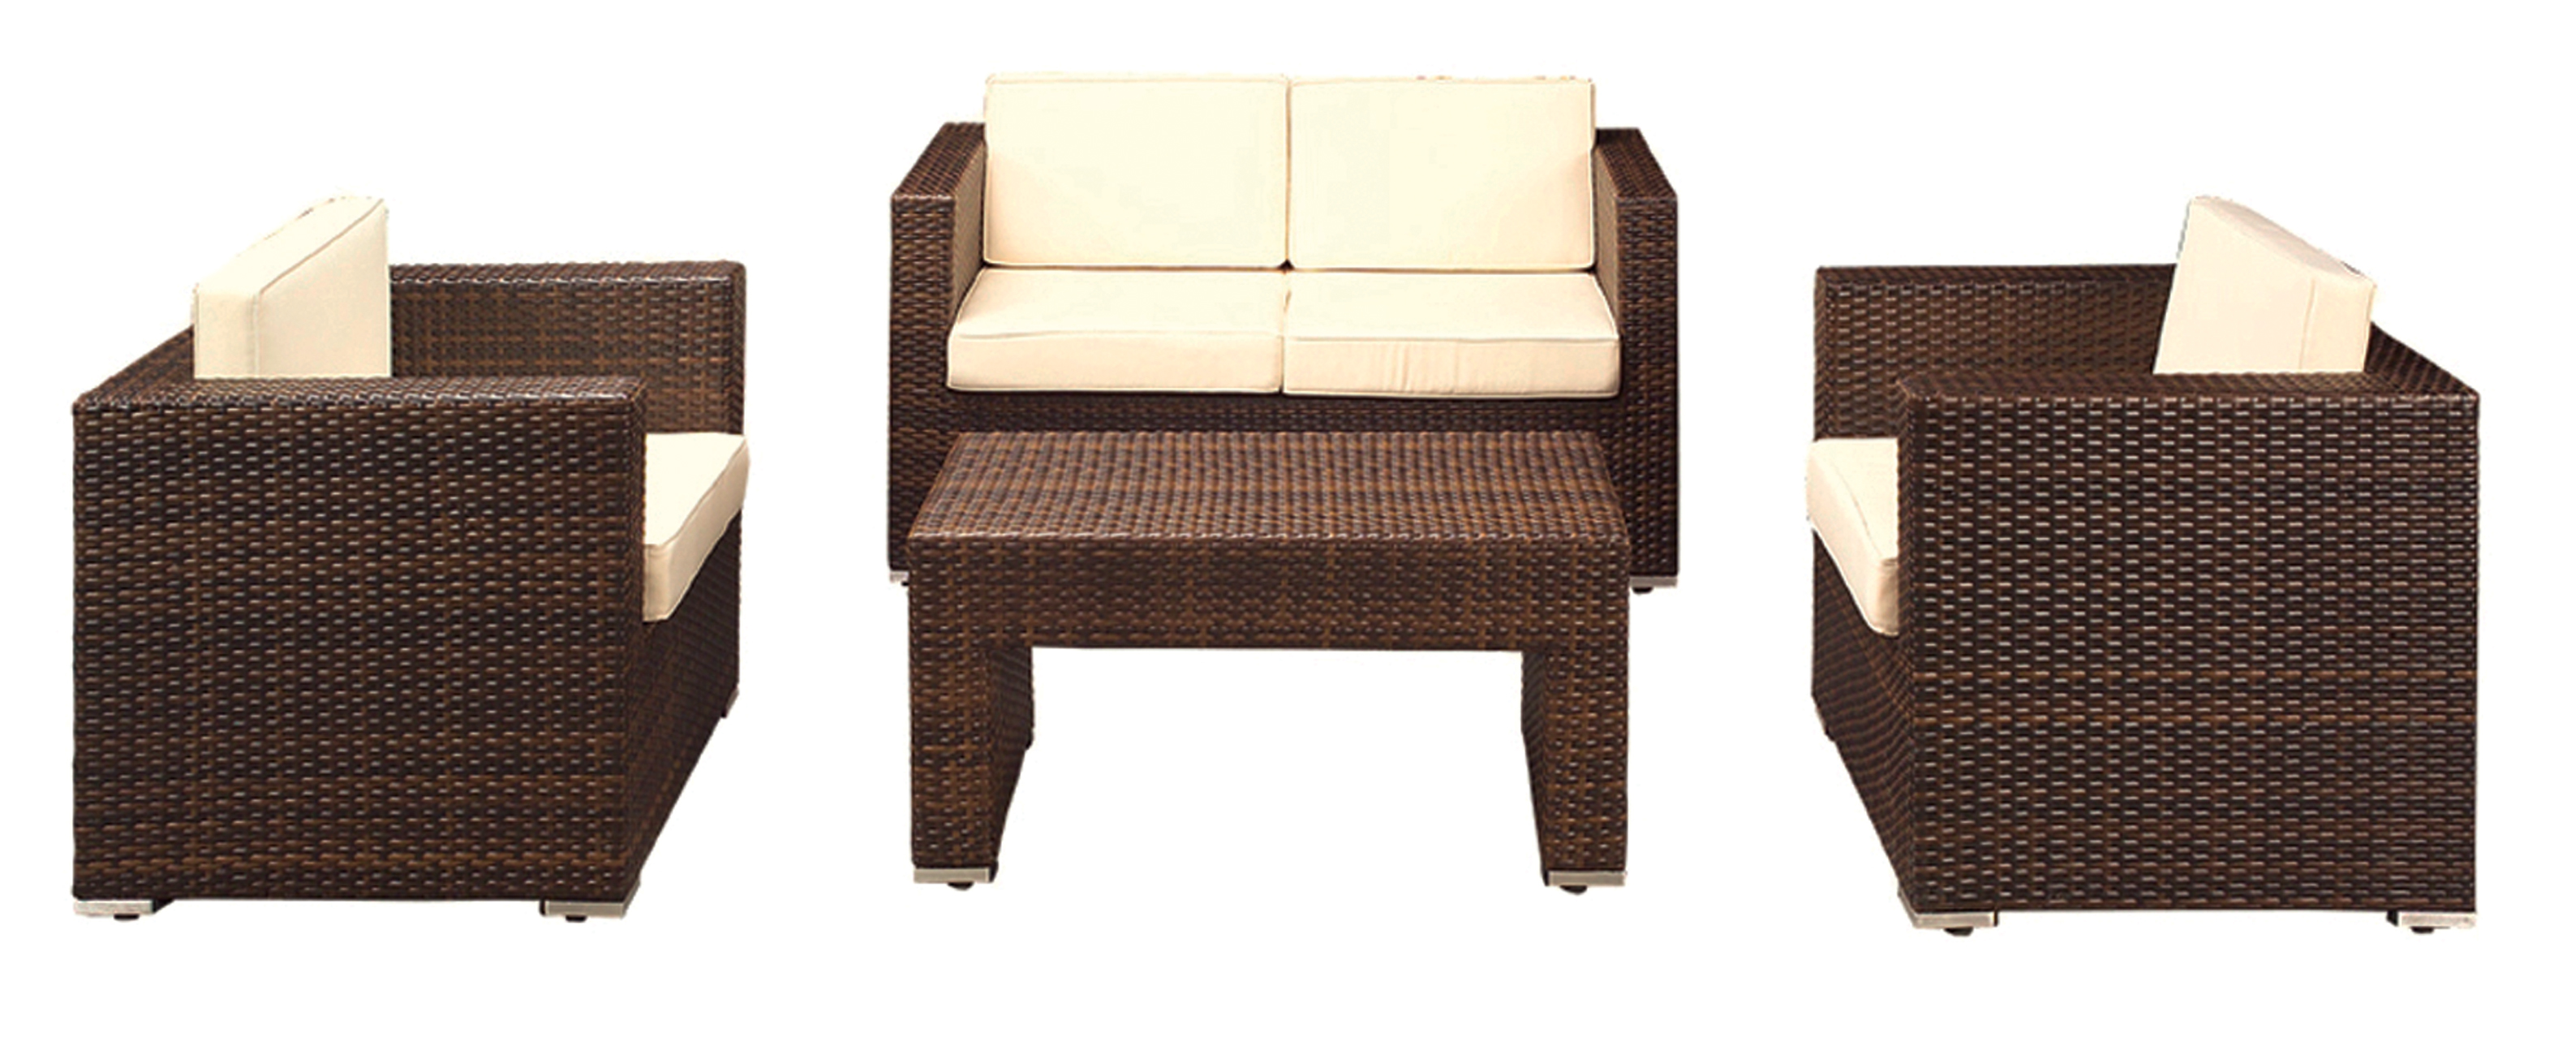 Мини набор Konway KN-4410_lederlook диван, 2 кресла, стол, оплетка из ротанга